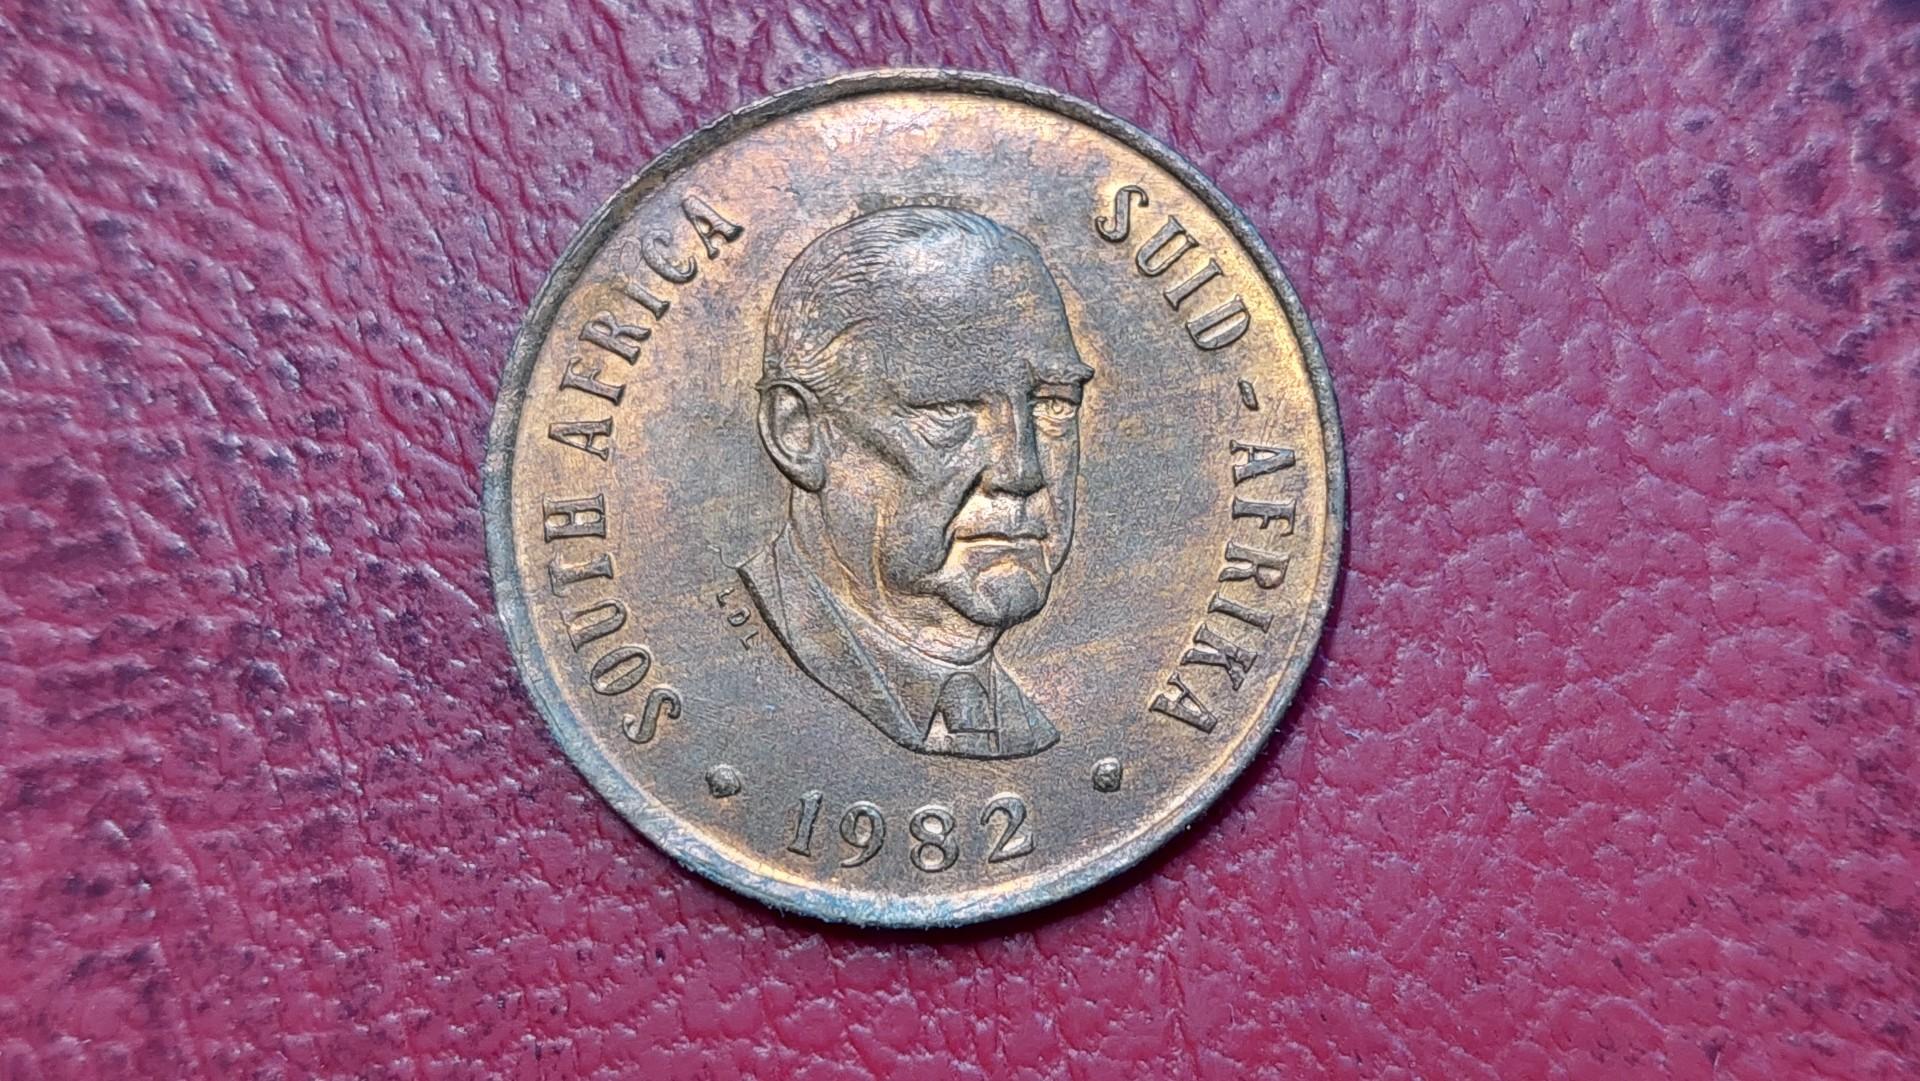 Pietų Afrika 2 centai, 1982 KM# 110